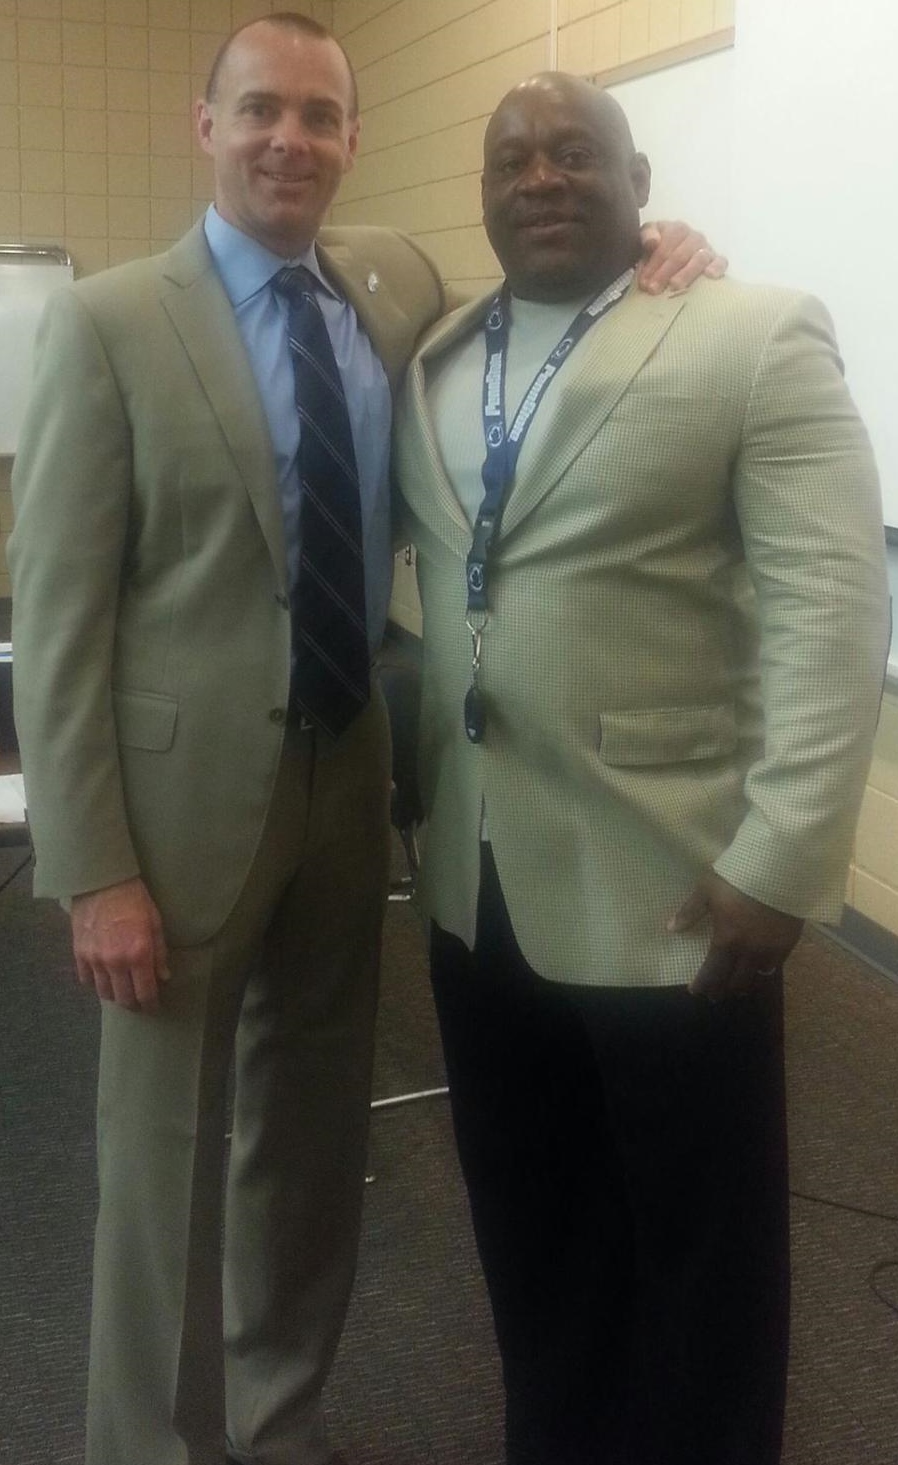 Philadelphia Eagles President Don Smolenski and Dr. Scott Glenn